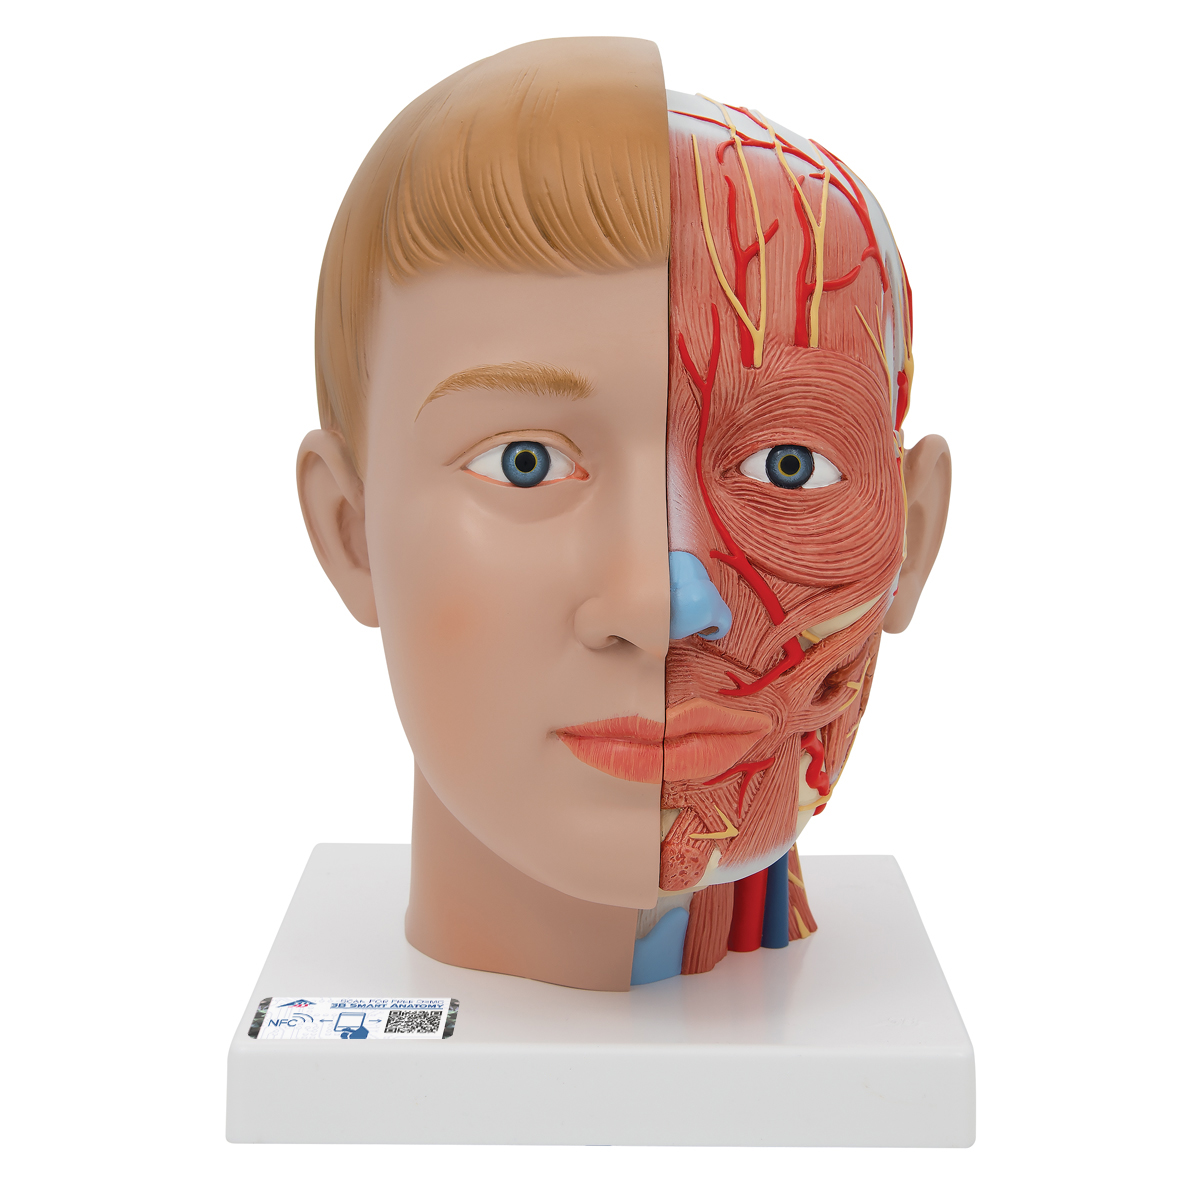 Lebensgroßes Kopfmodell mit Gehirn & Hals, 4-teilig - 3B Smart Anatomy, Bestellnummer 1000216, C07, 3B Scientific